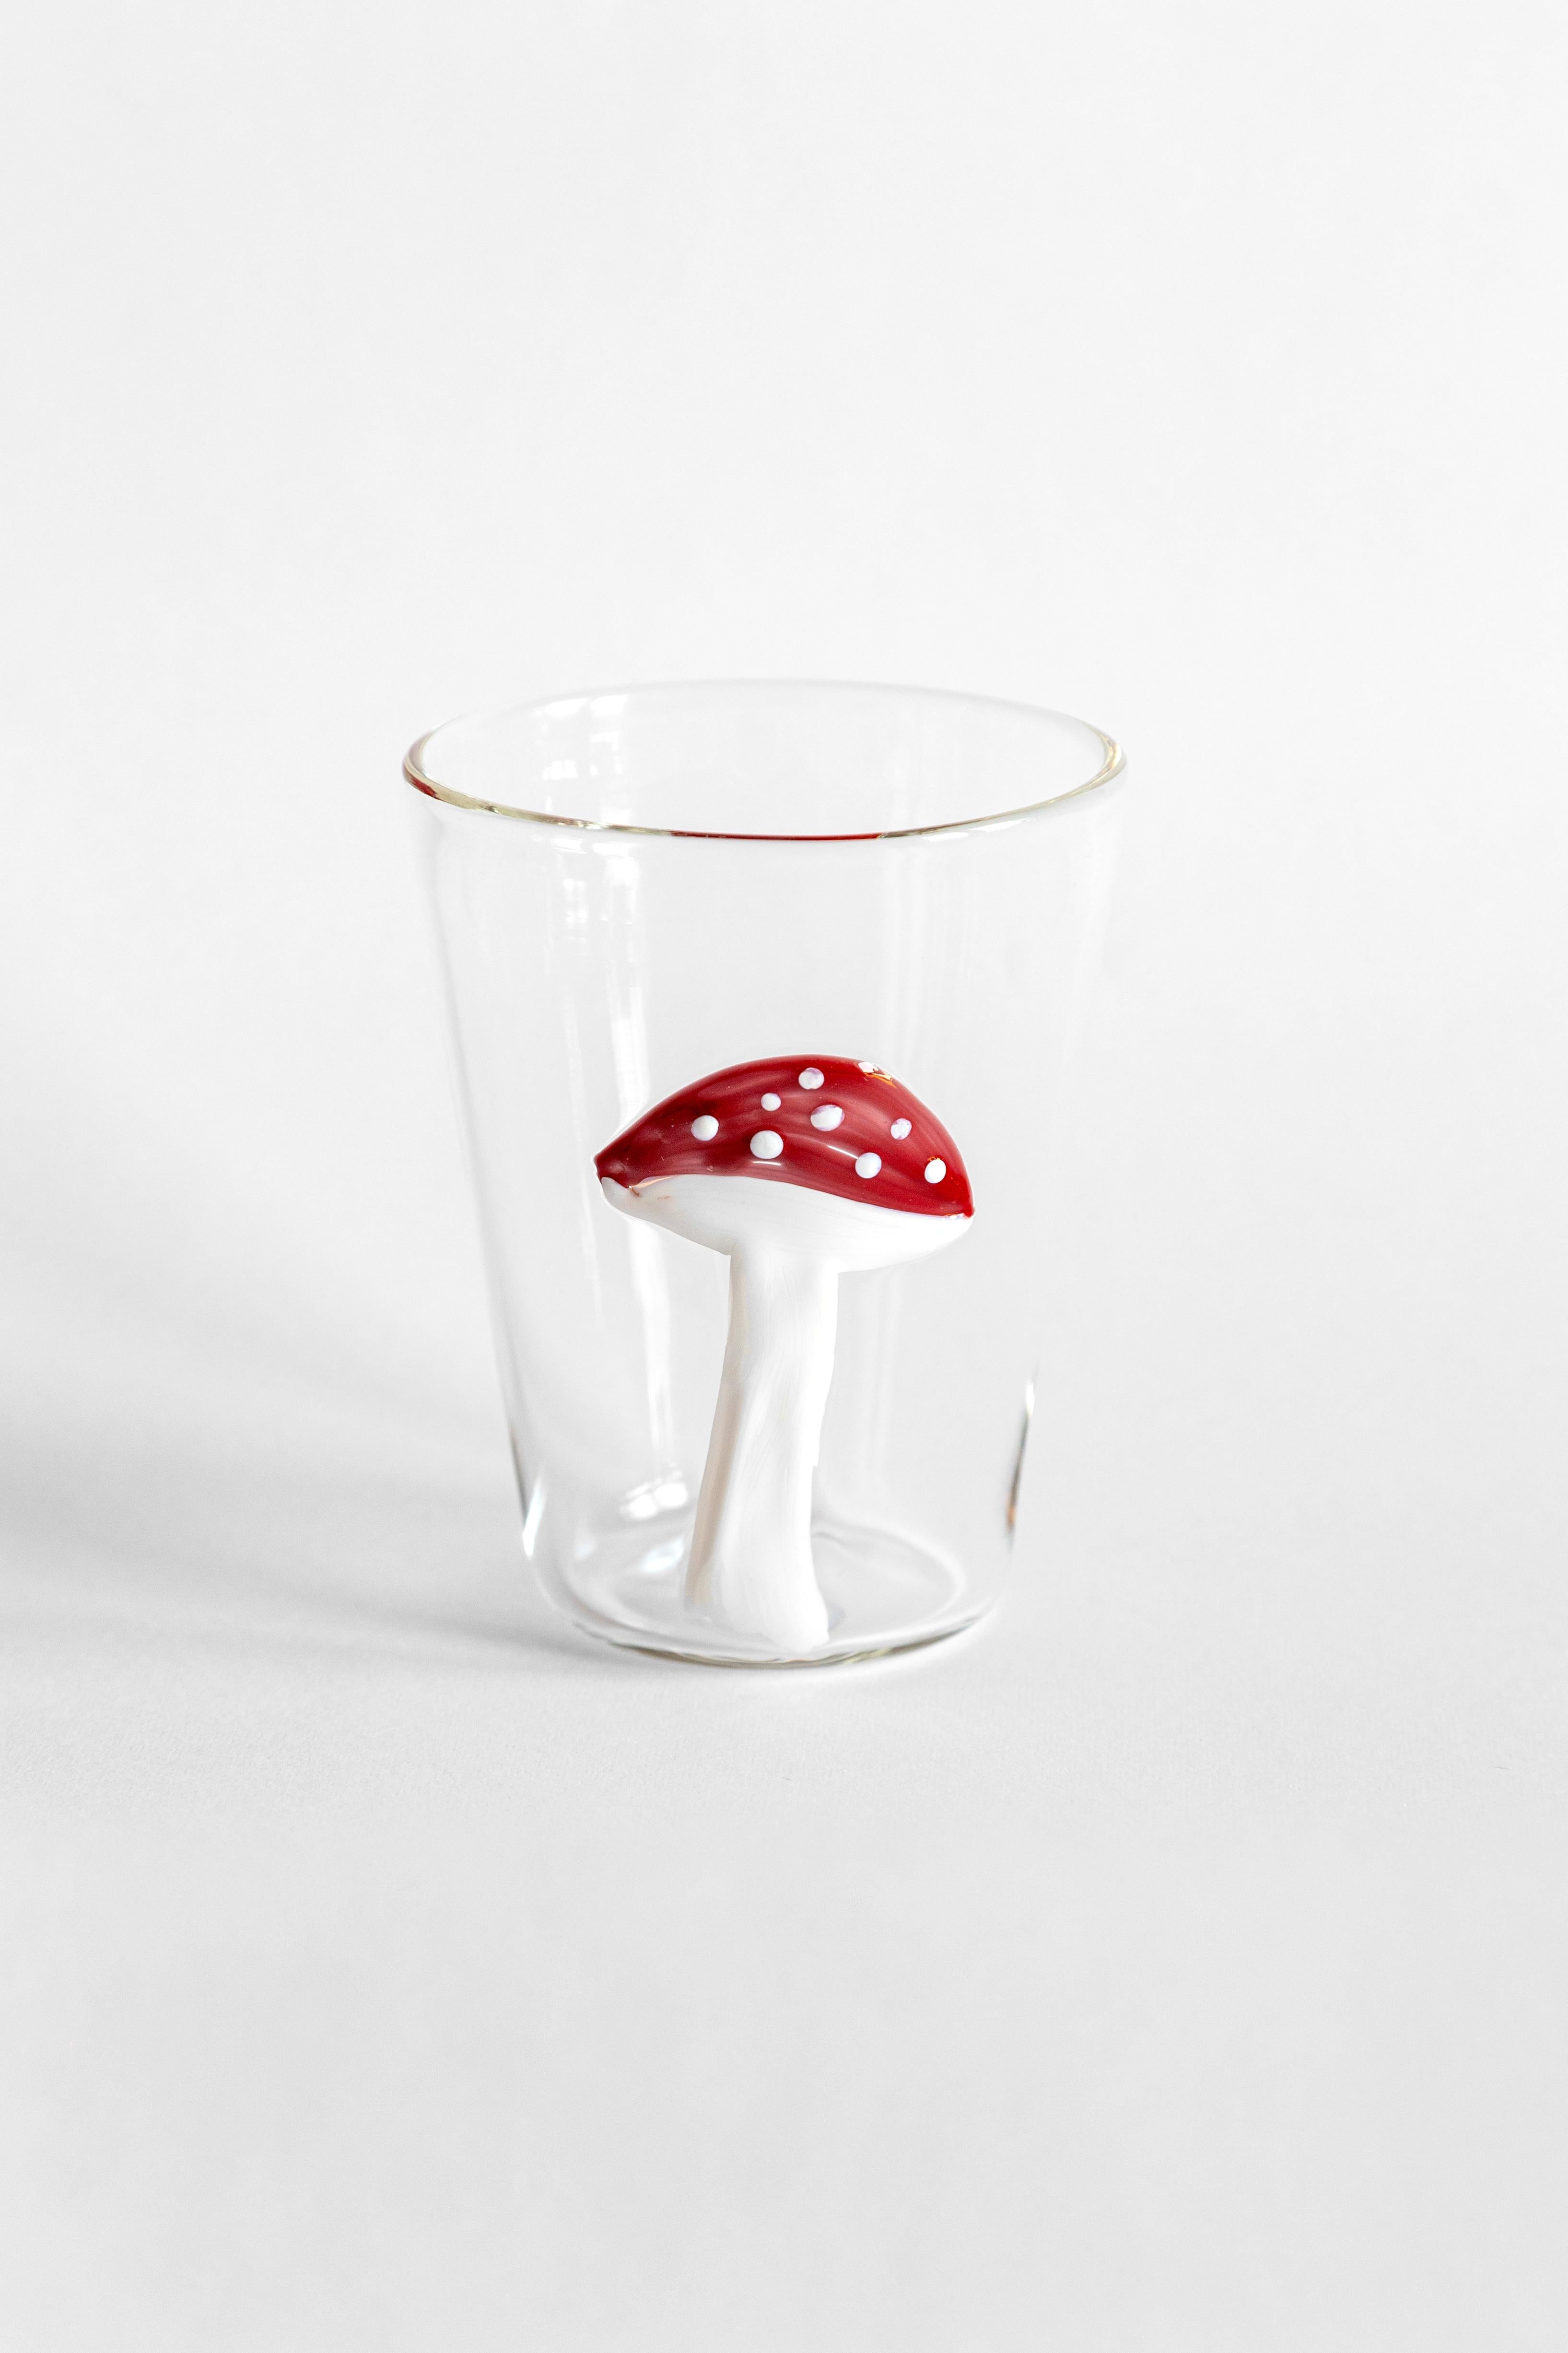 Cabinet de Curiosités, Contemporary Blown Water Glass with Decorative Details For Sale 1